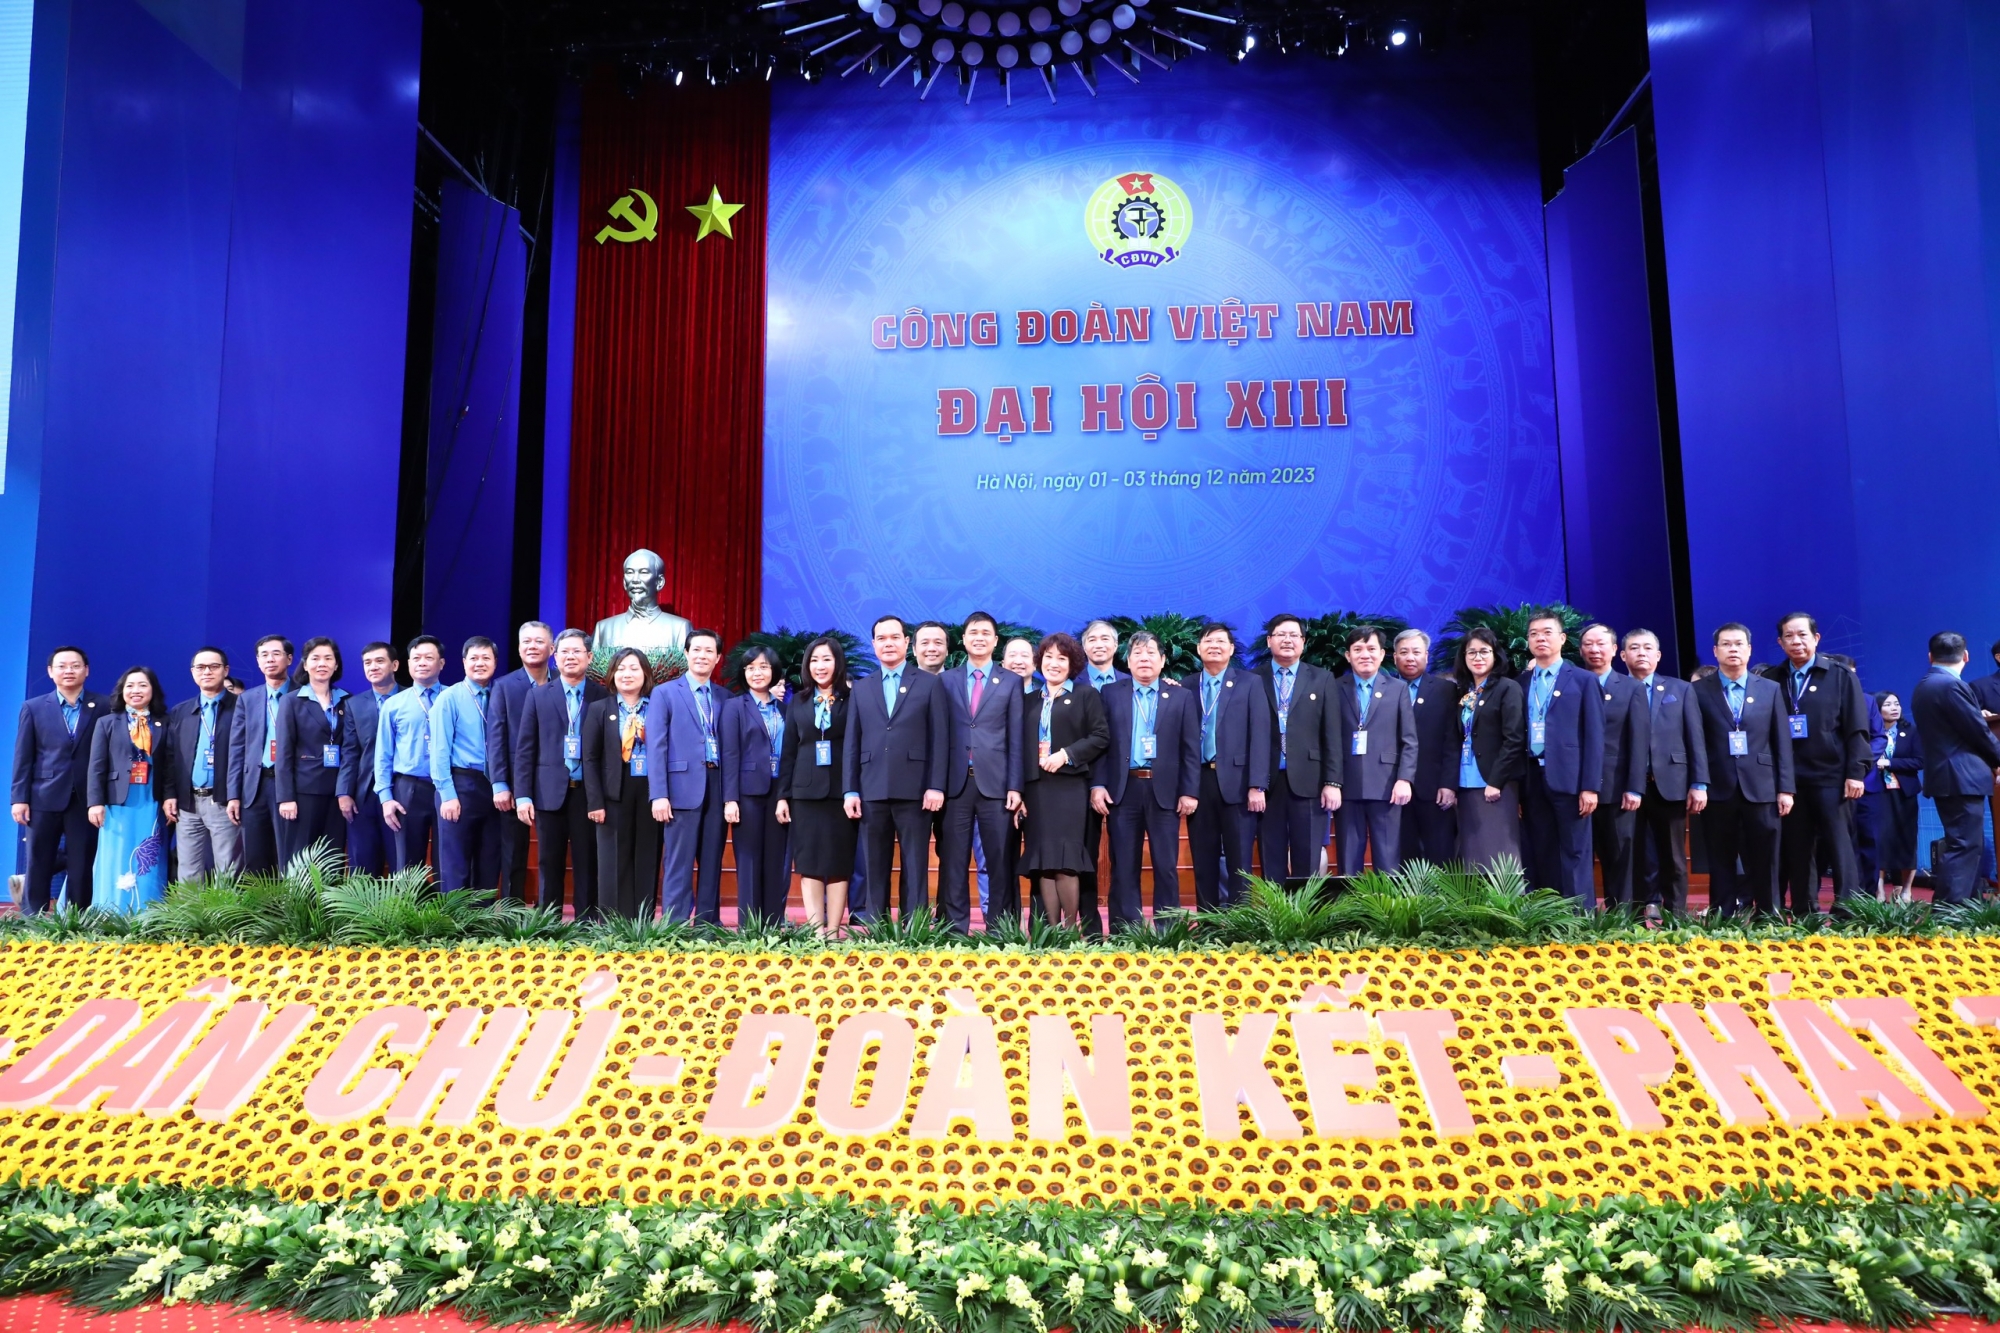 Đoàn đại biểu Công đoàn Viên chức Việt Nam tham dự Đại hội XIII Công đoàn Việt Nam